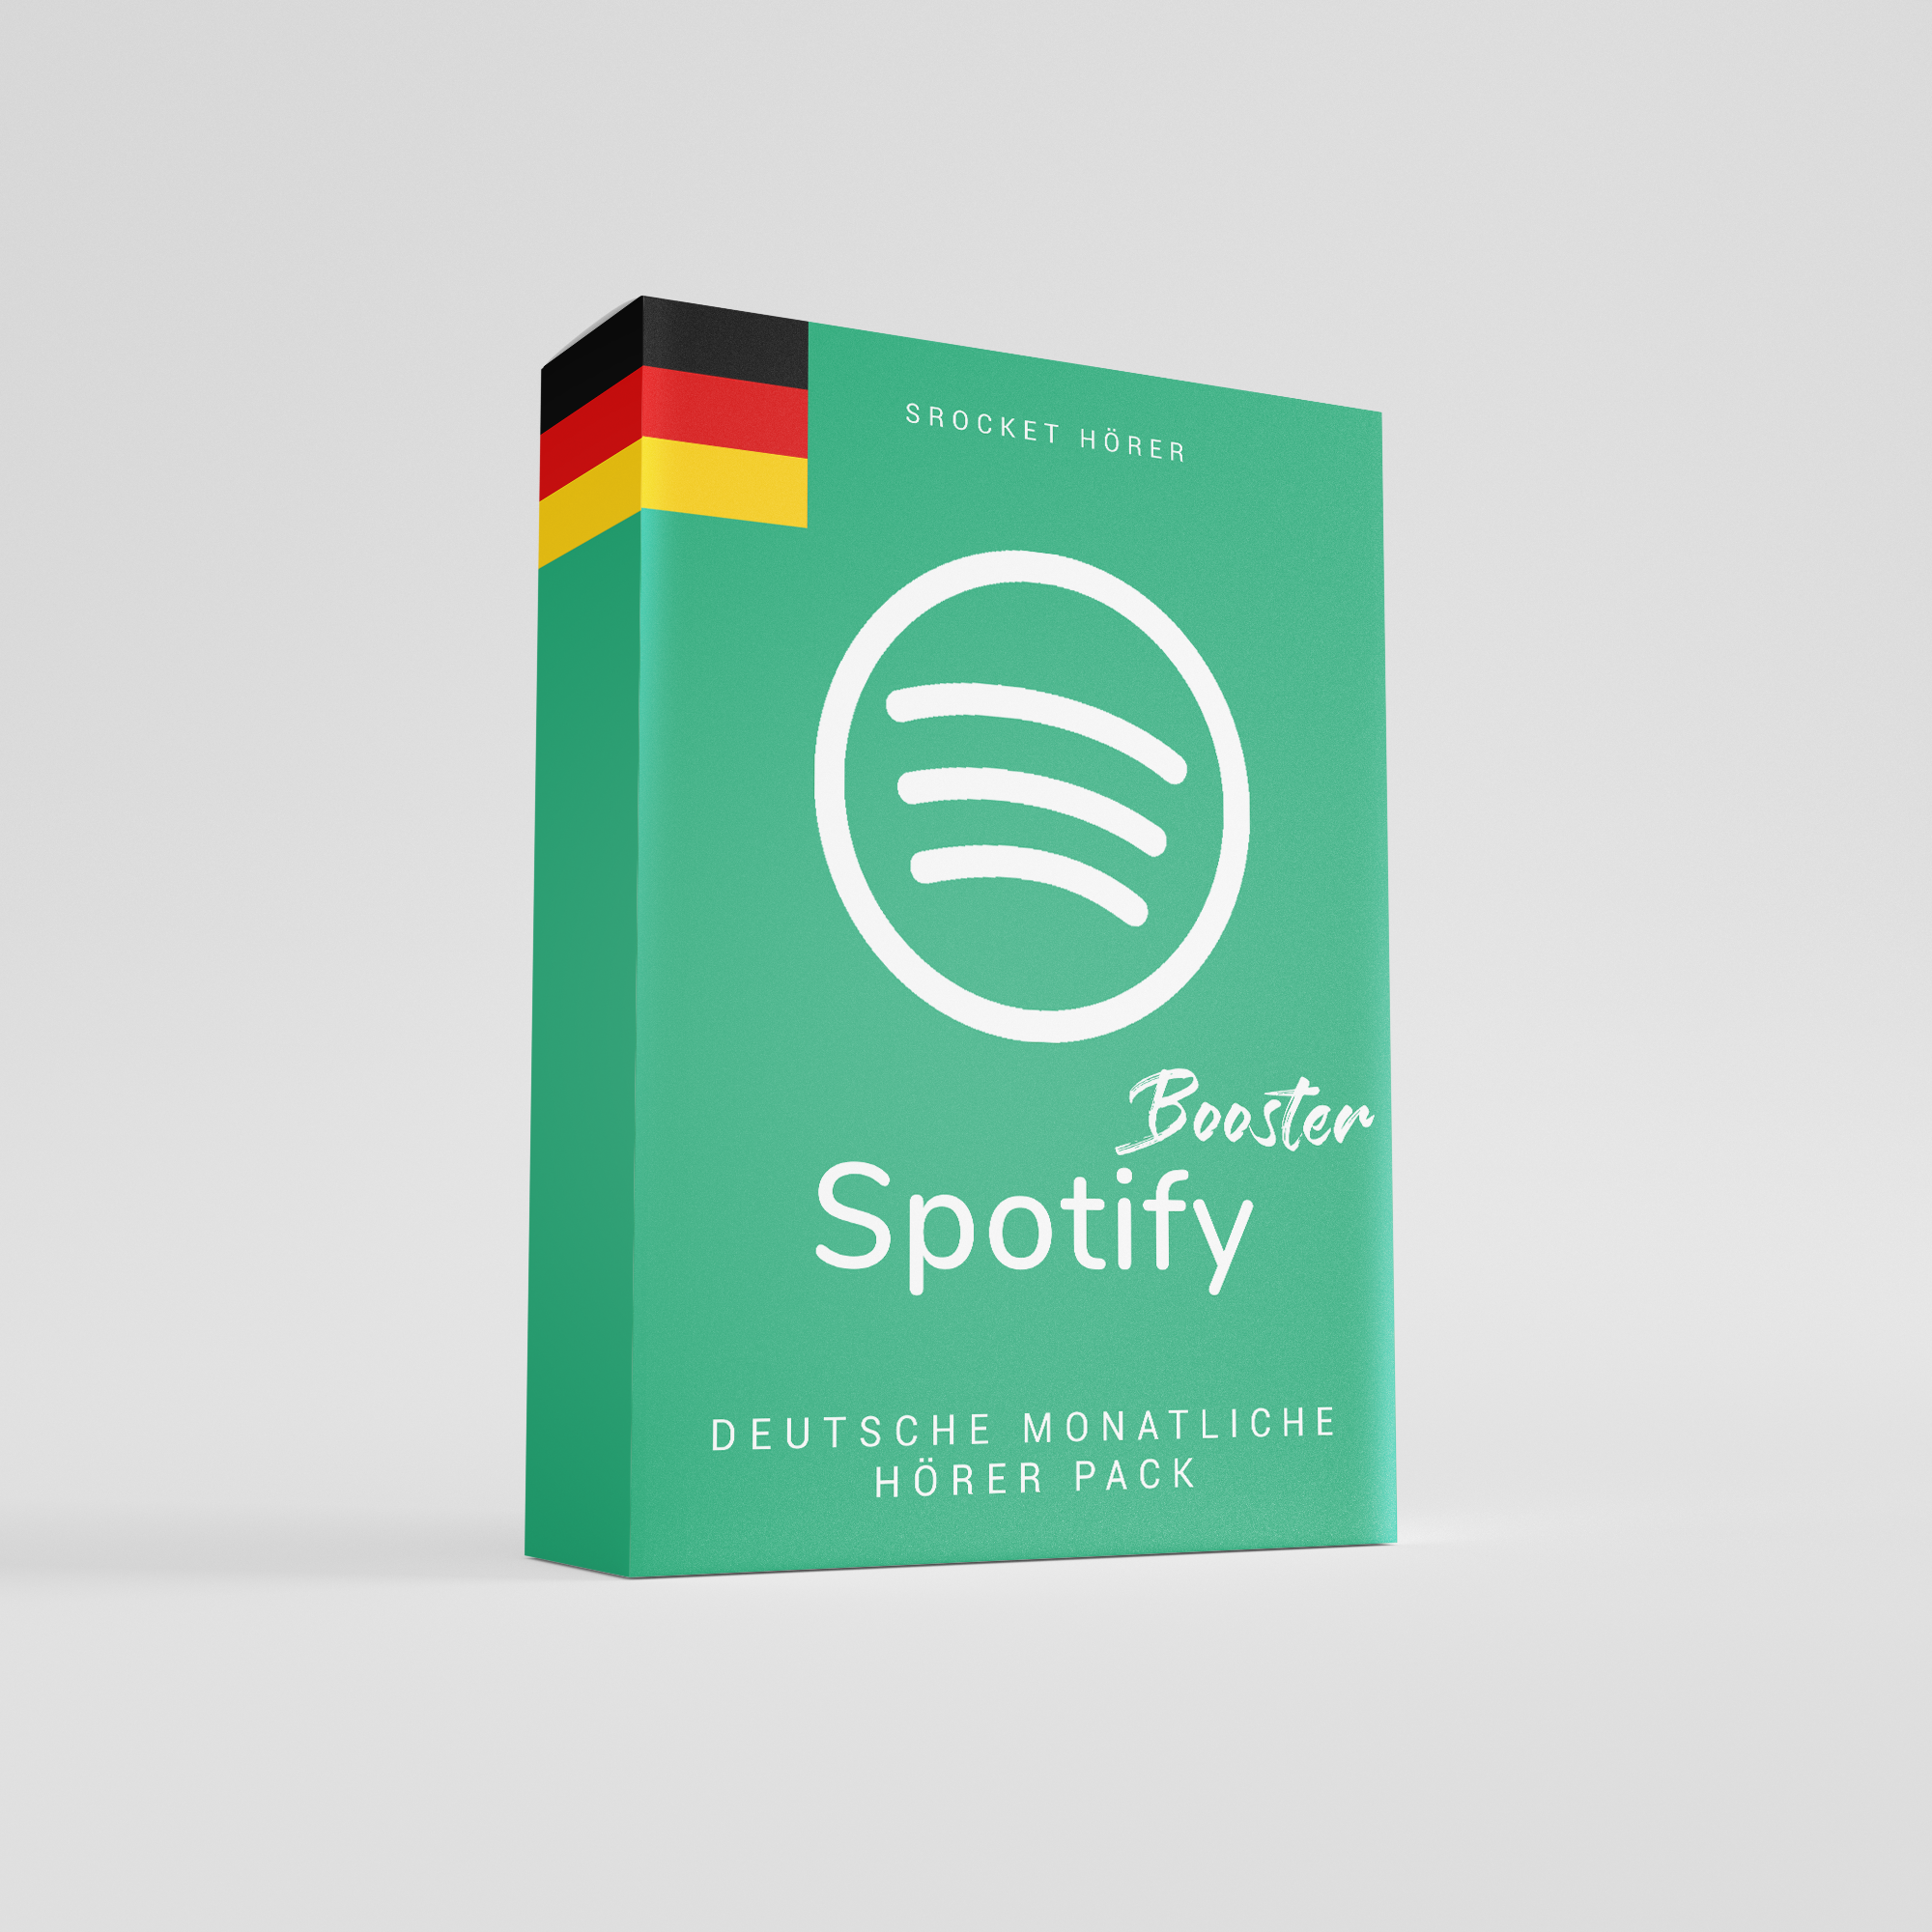 Deutsche Monatliche Hörer Spotify kaufen